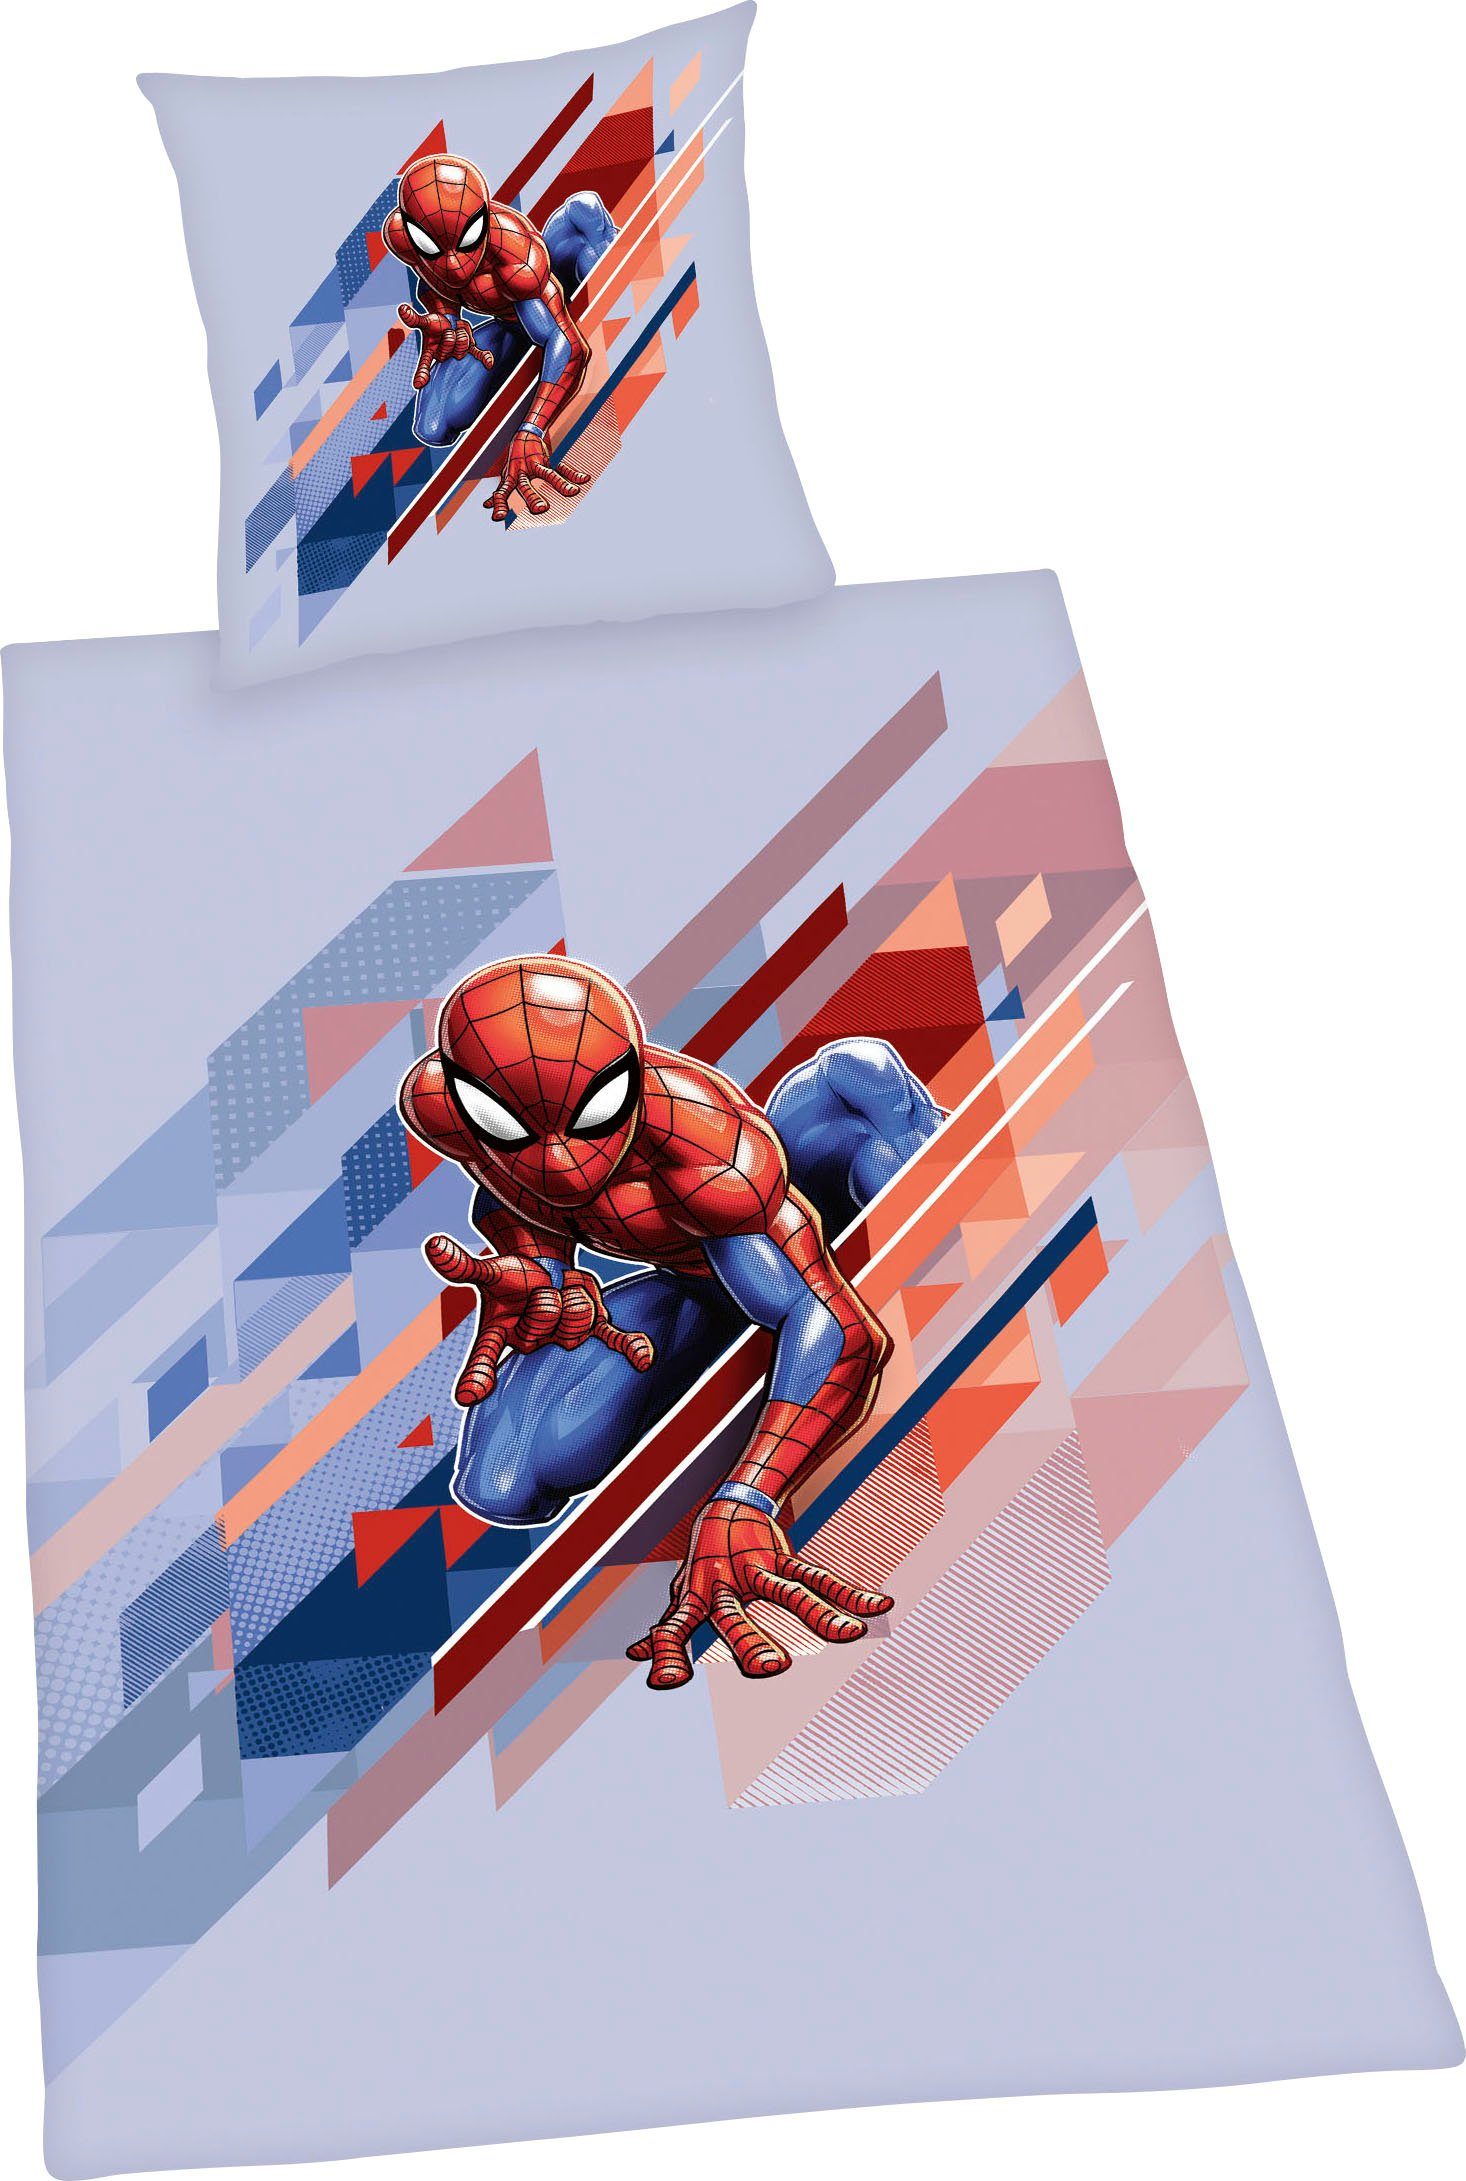 Kinderbettwäsche »Spiderman«, Disney, mit tollem Spiderman Motiv-HomeTrends